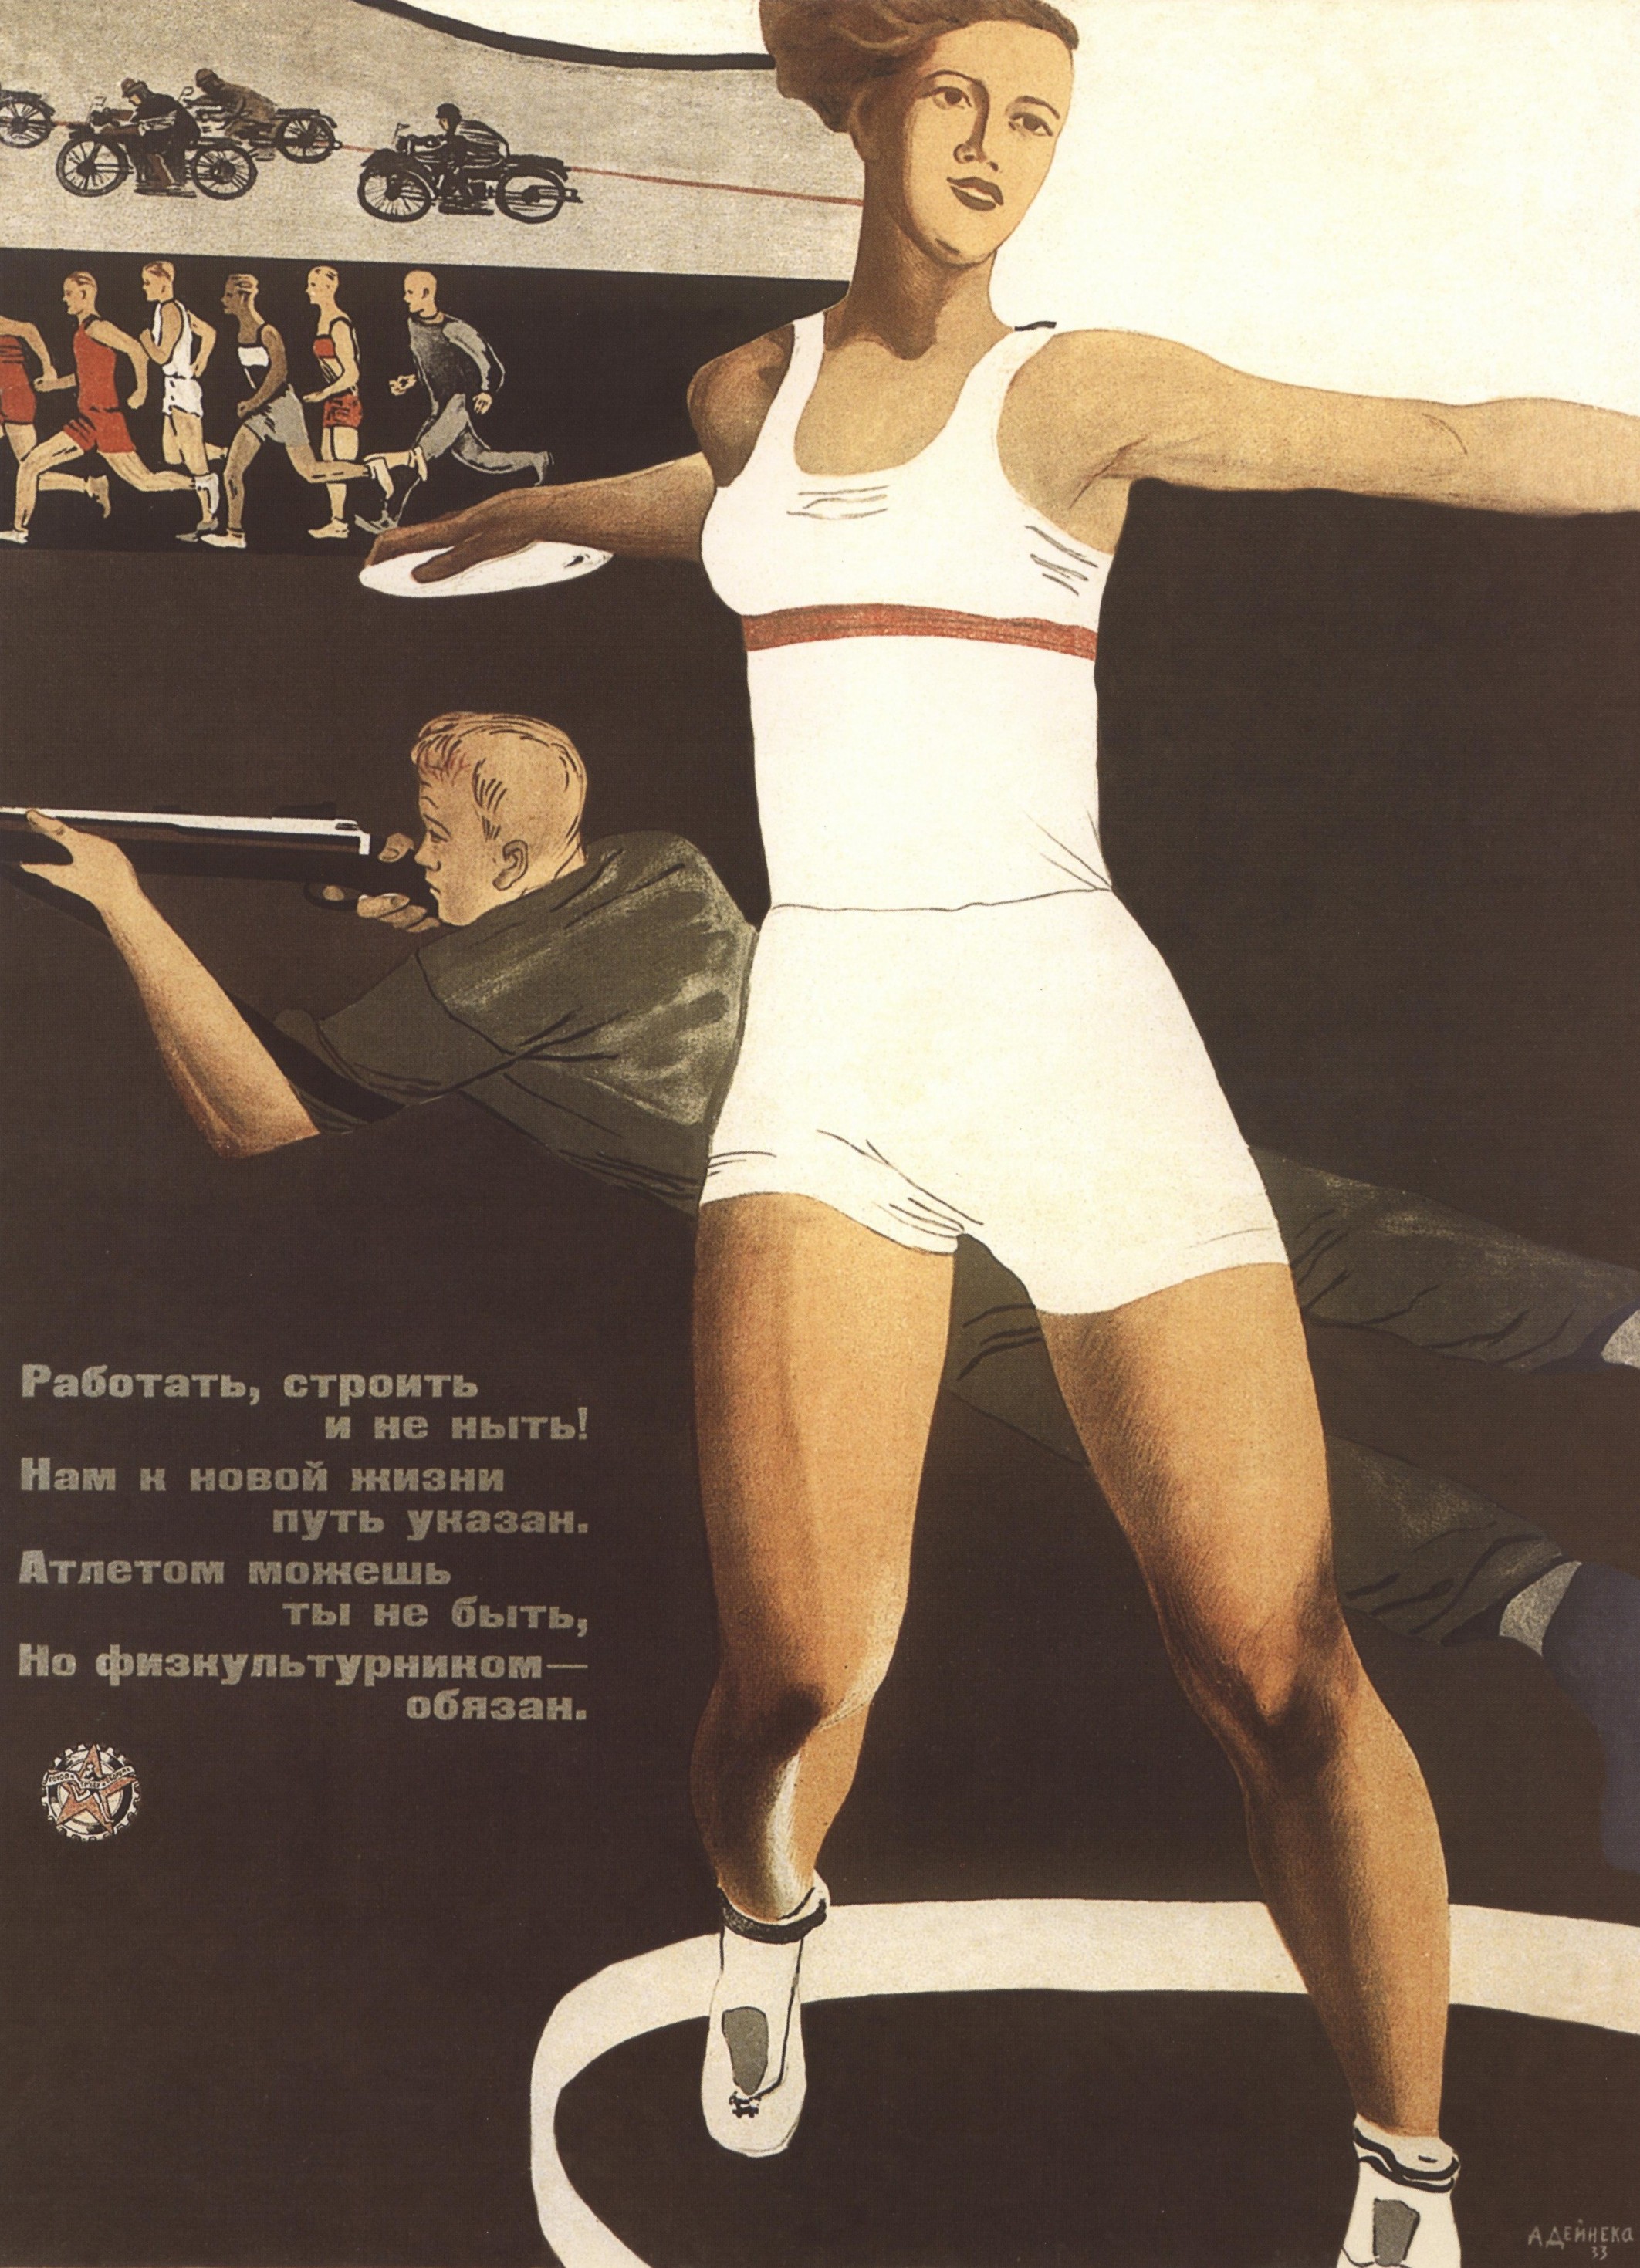 А. А. Дейнека. Физкультурница («Работать, строить и не ныть!») Плакат, 1933 г.